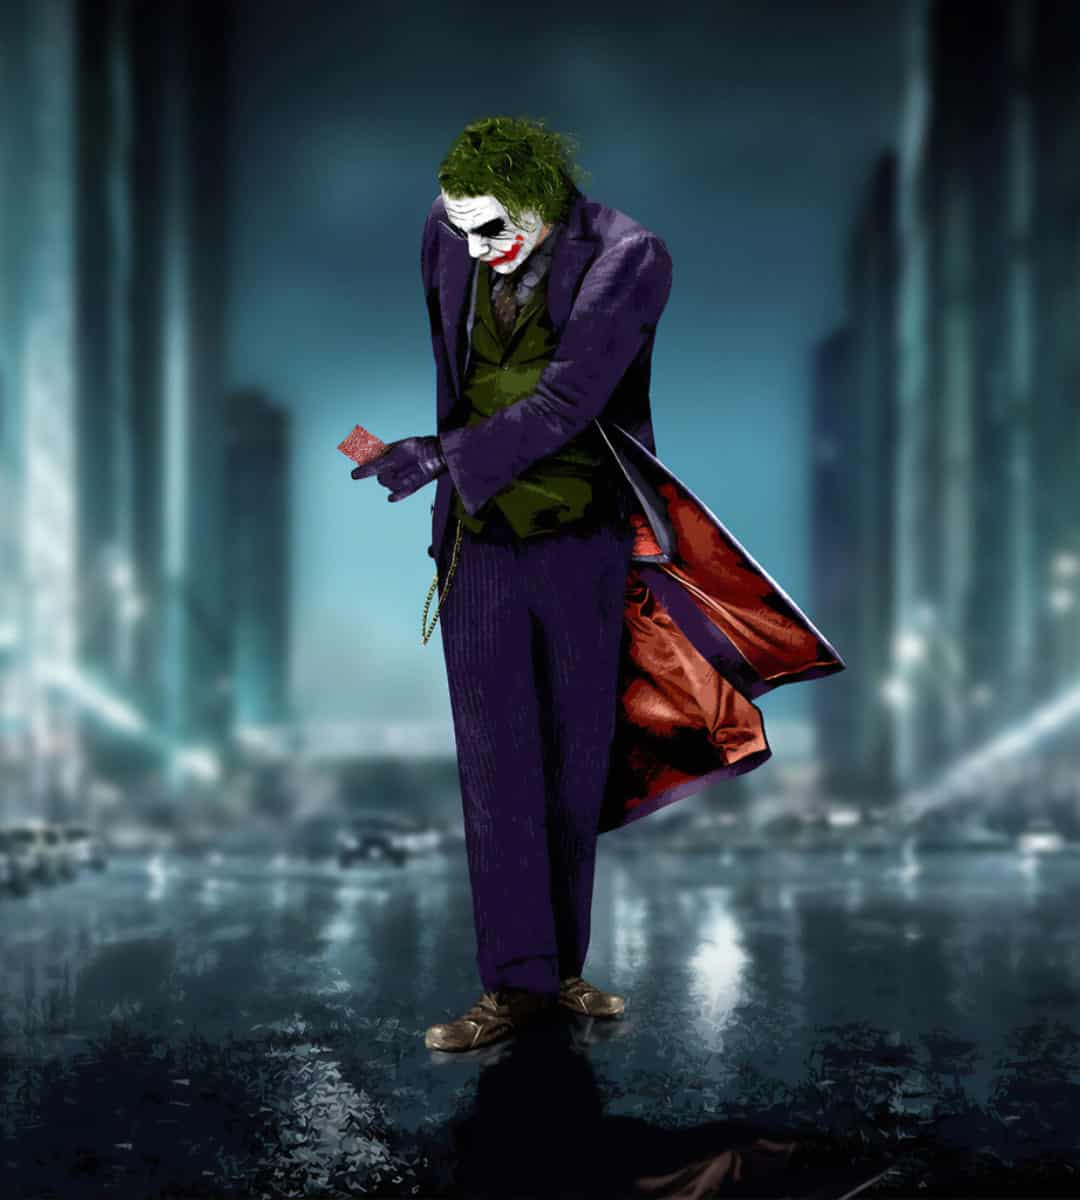 Joker DP Images